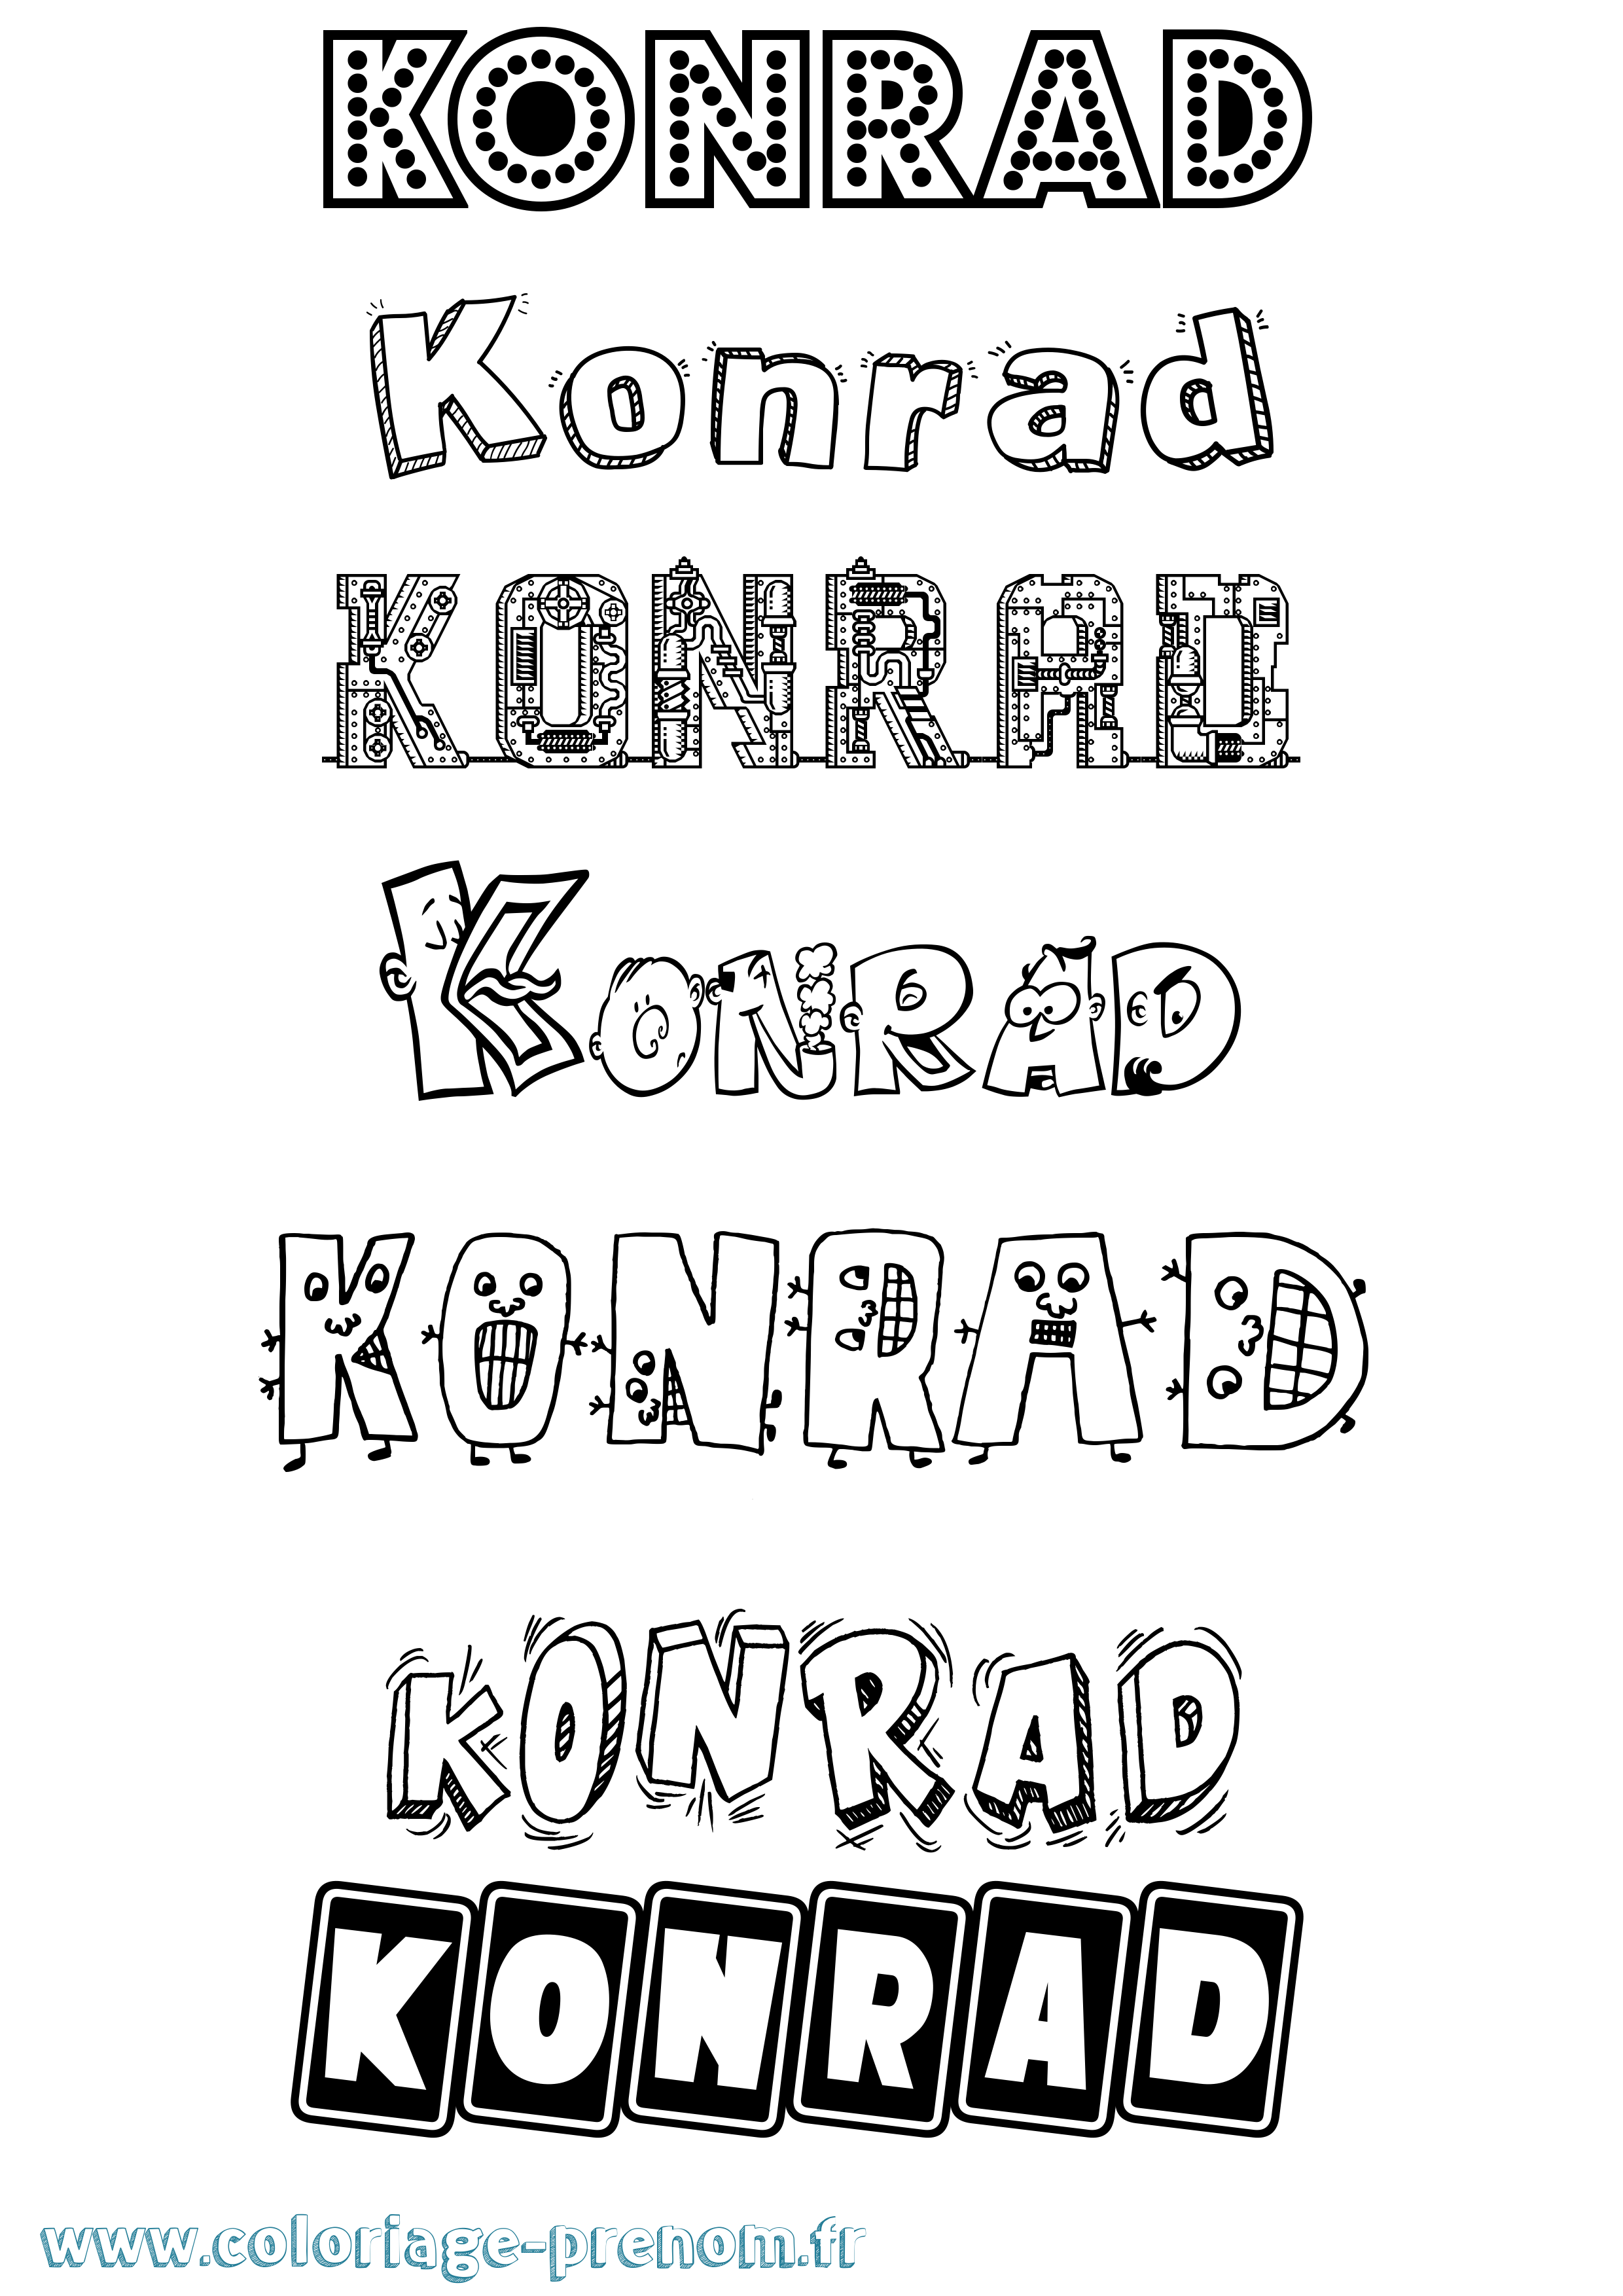 Coloriage prénom Konrad Fun